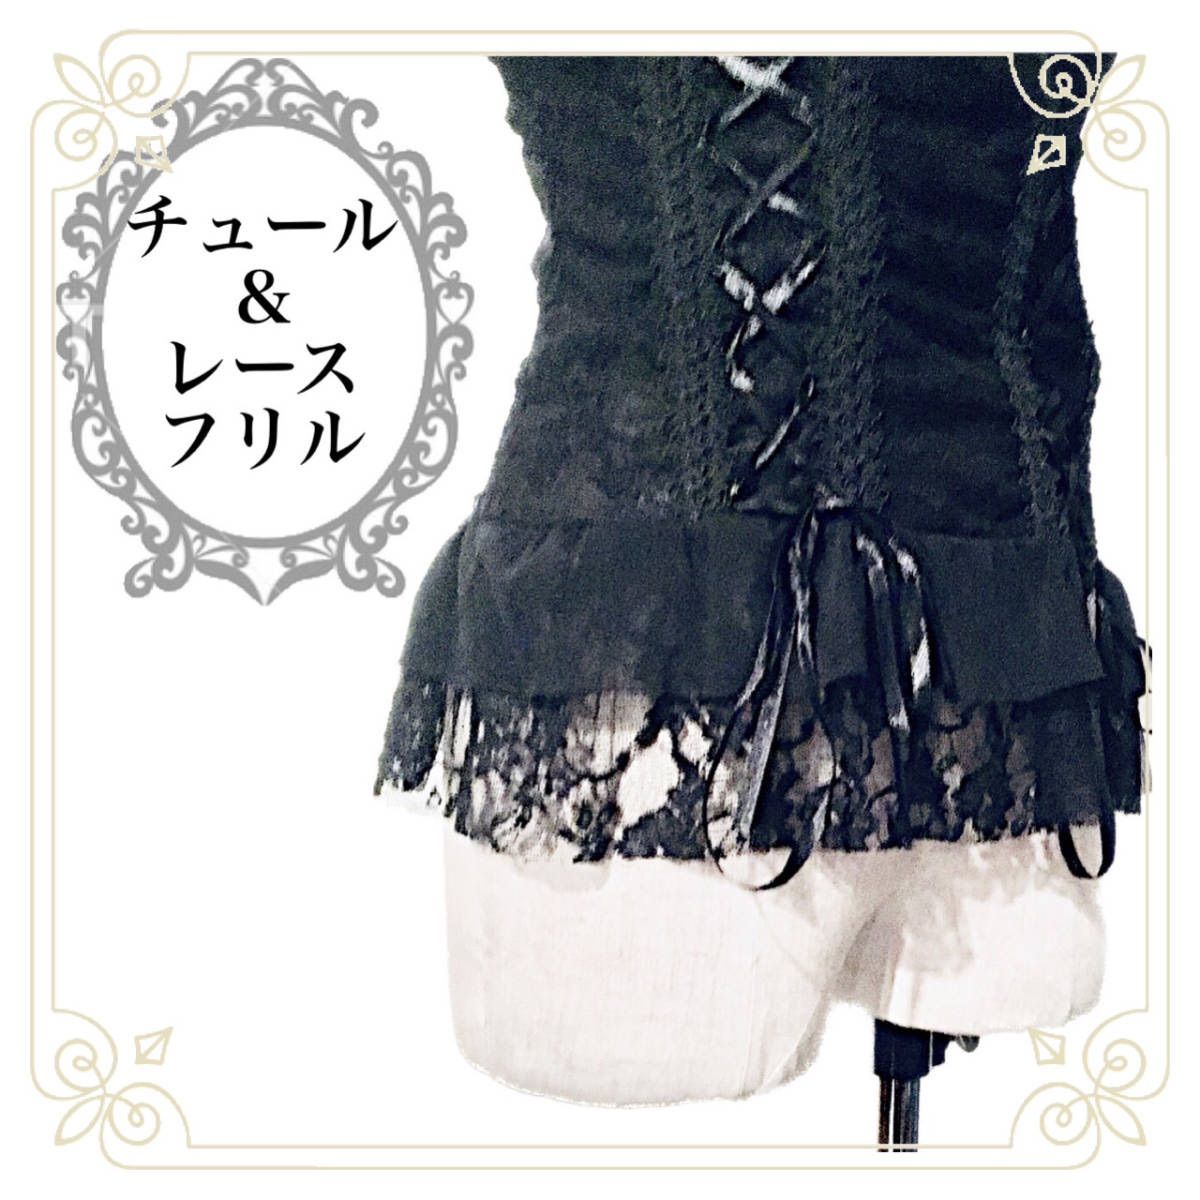 【Lサイズ】総レース 編み上げコルセット ドレス系 ビスチェ ゴシック ブラック